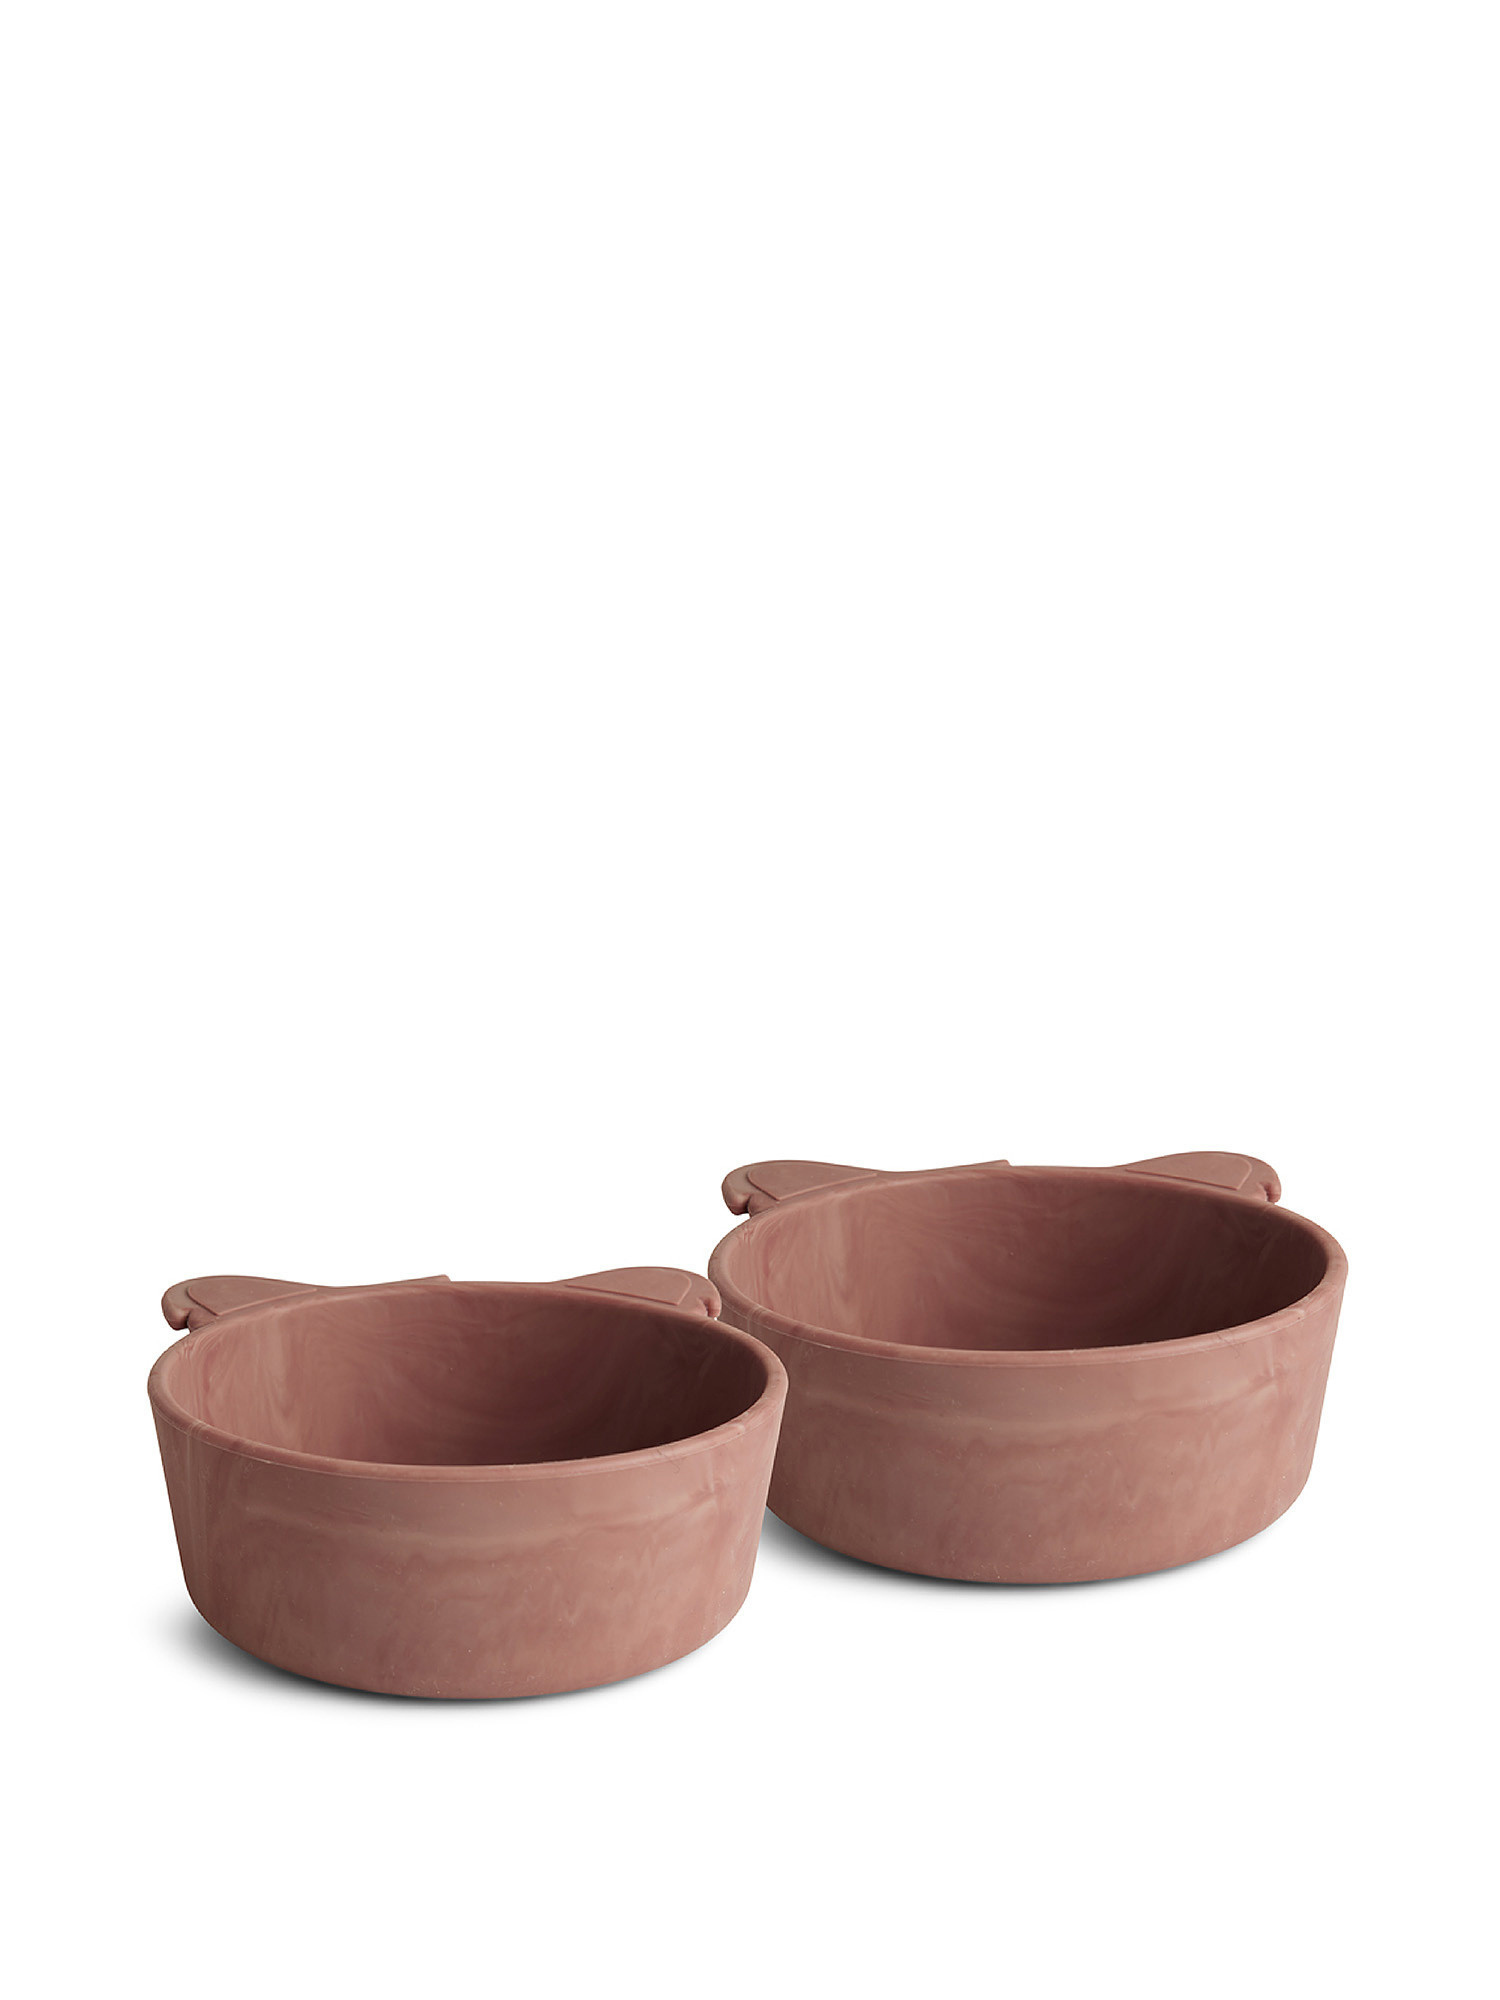 Set of 2 koala-shaped silicone bowls, Red, large